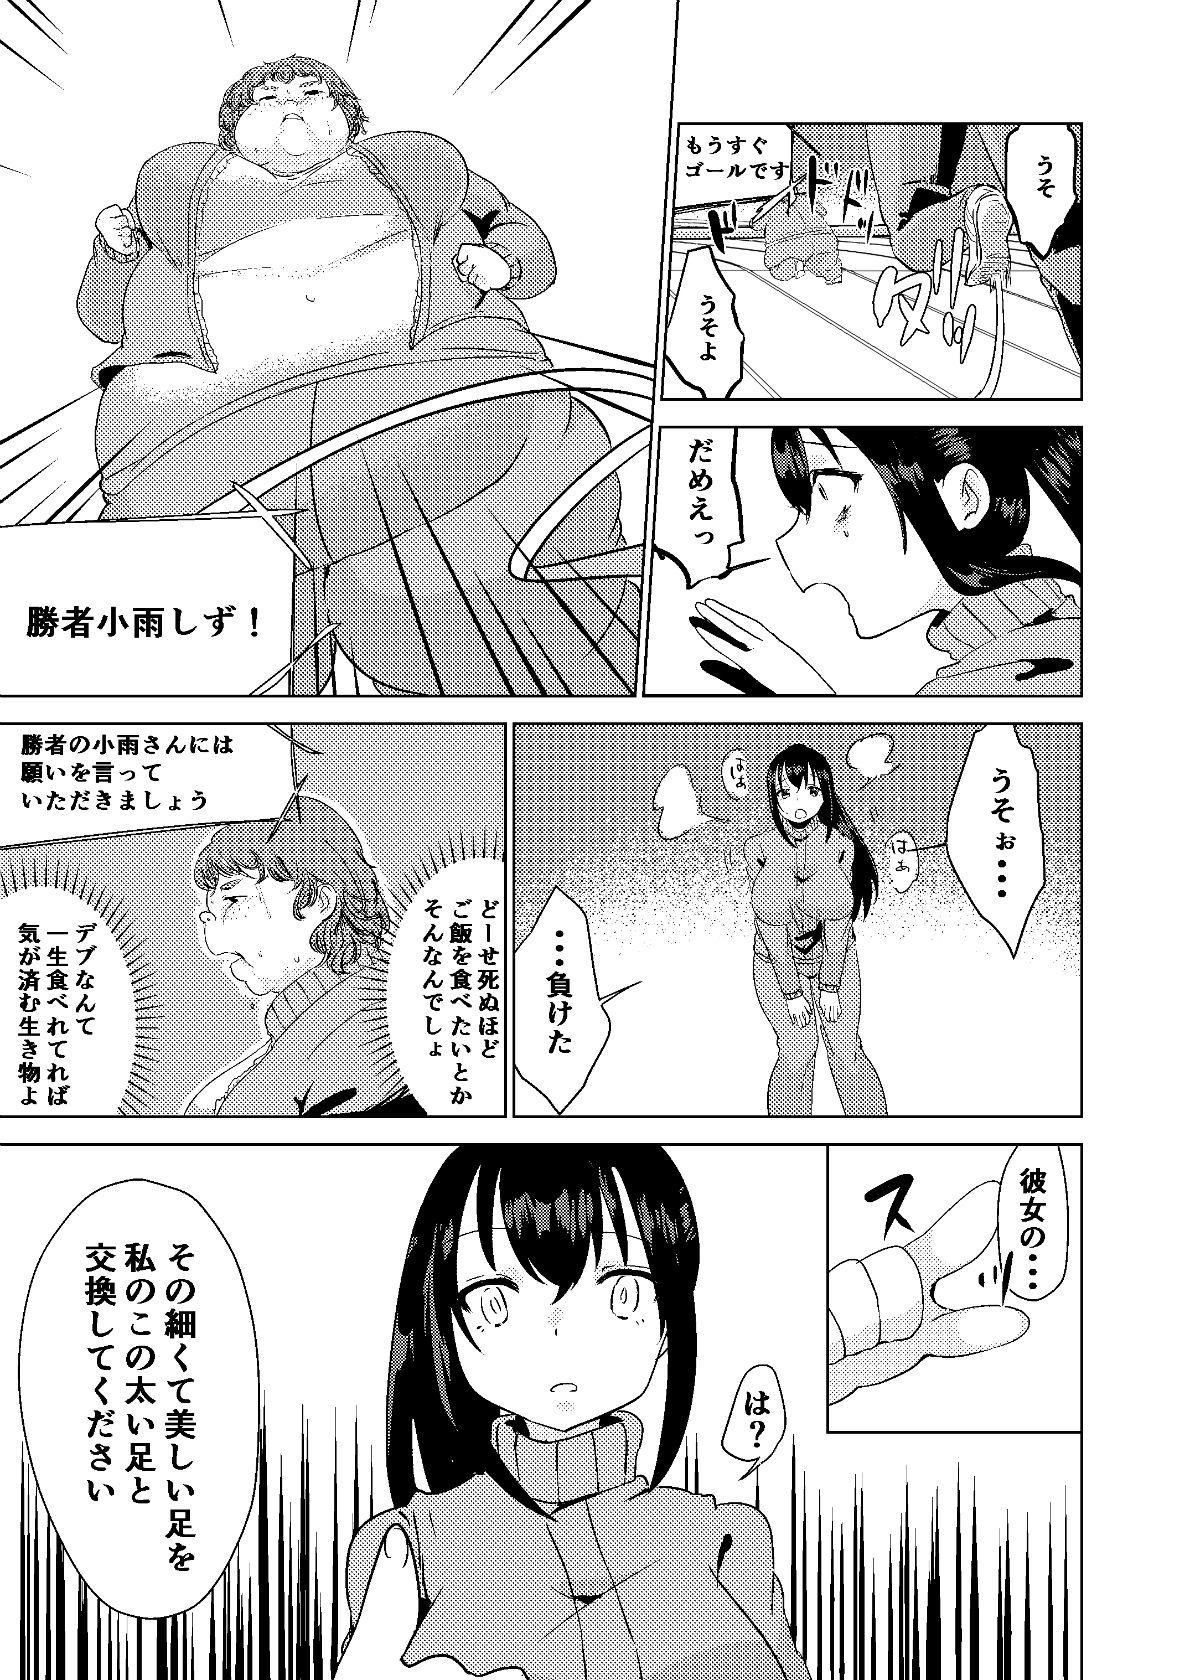 All Kyou kara Watashi wa Anata ni Naru. - Original Publico - Page 11